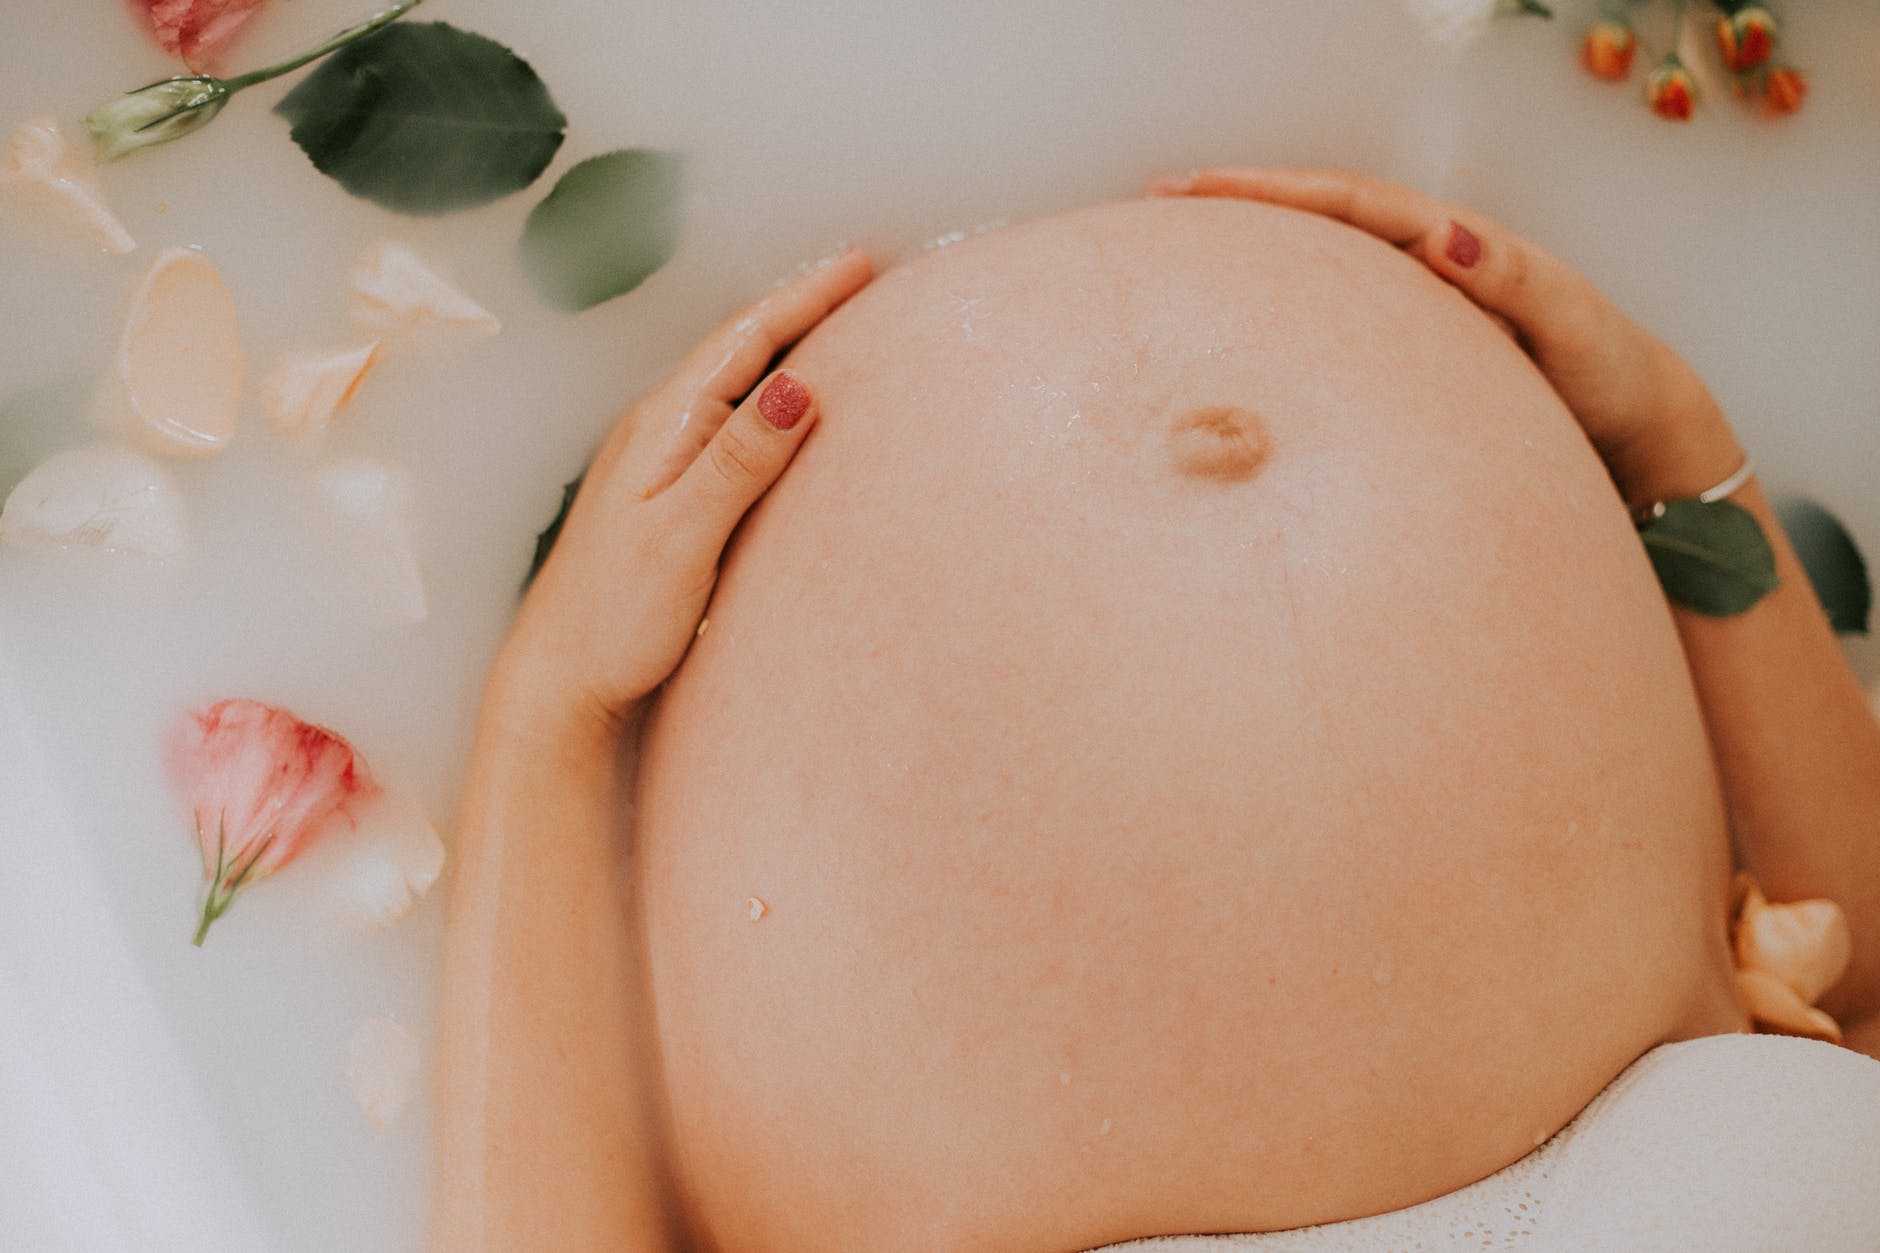 Πώς θα αντιμετωπίσεις τρεις παρενέργειες της εγκυμοσύνης στο δέρμα